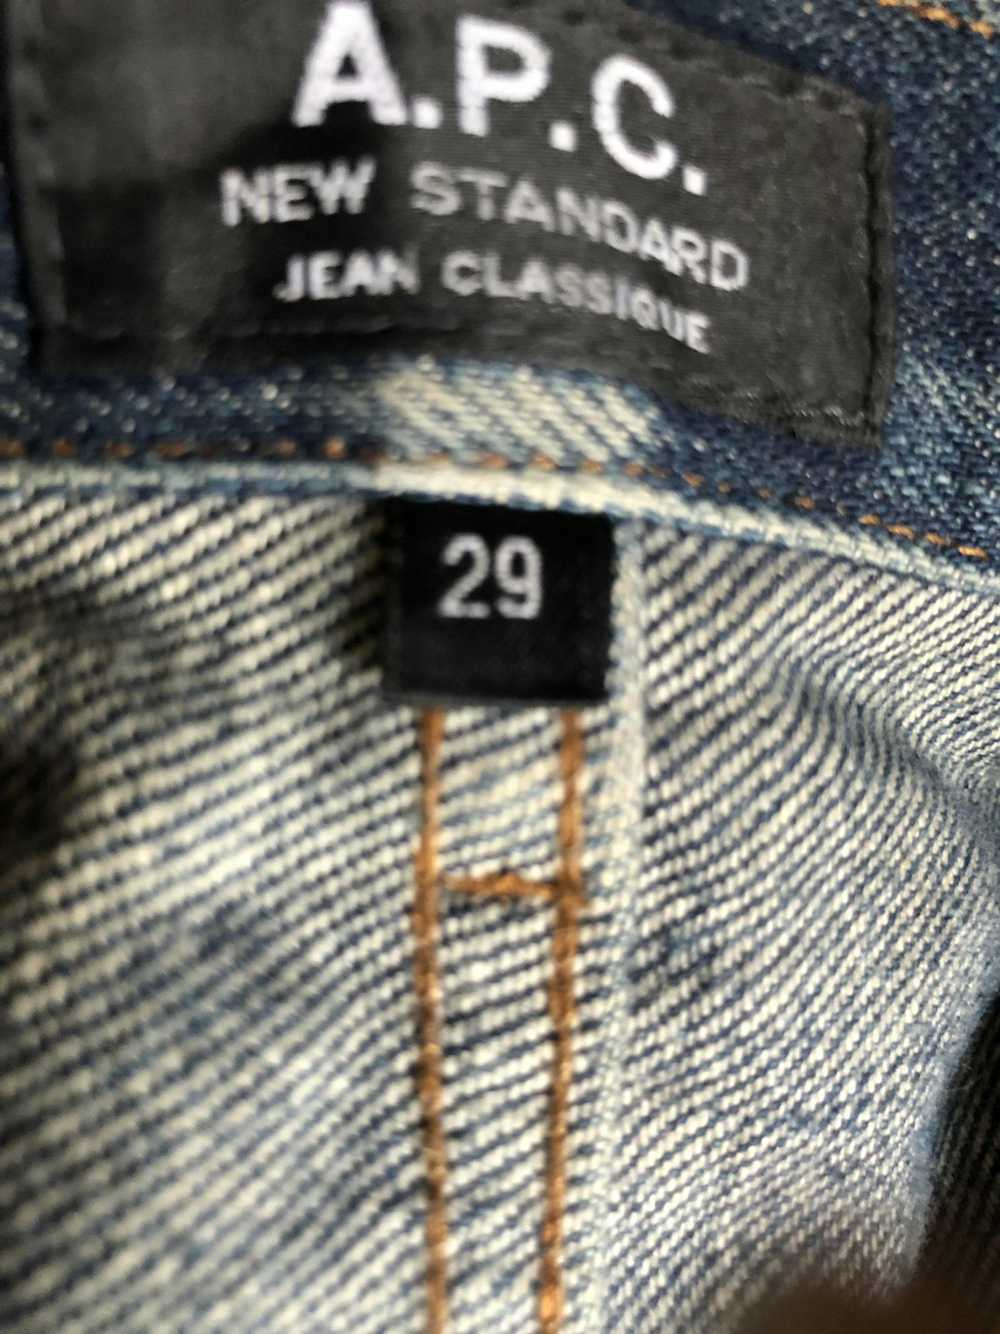 A.P.C. A.P.C. New Standard Jeans - image 3